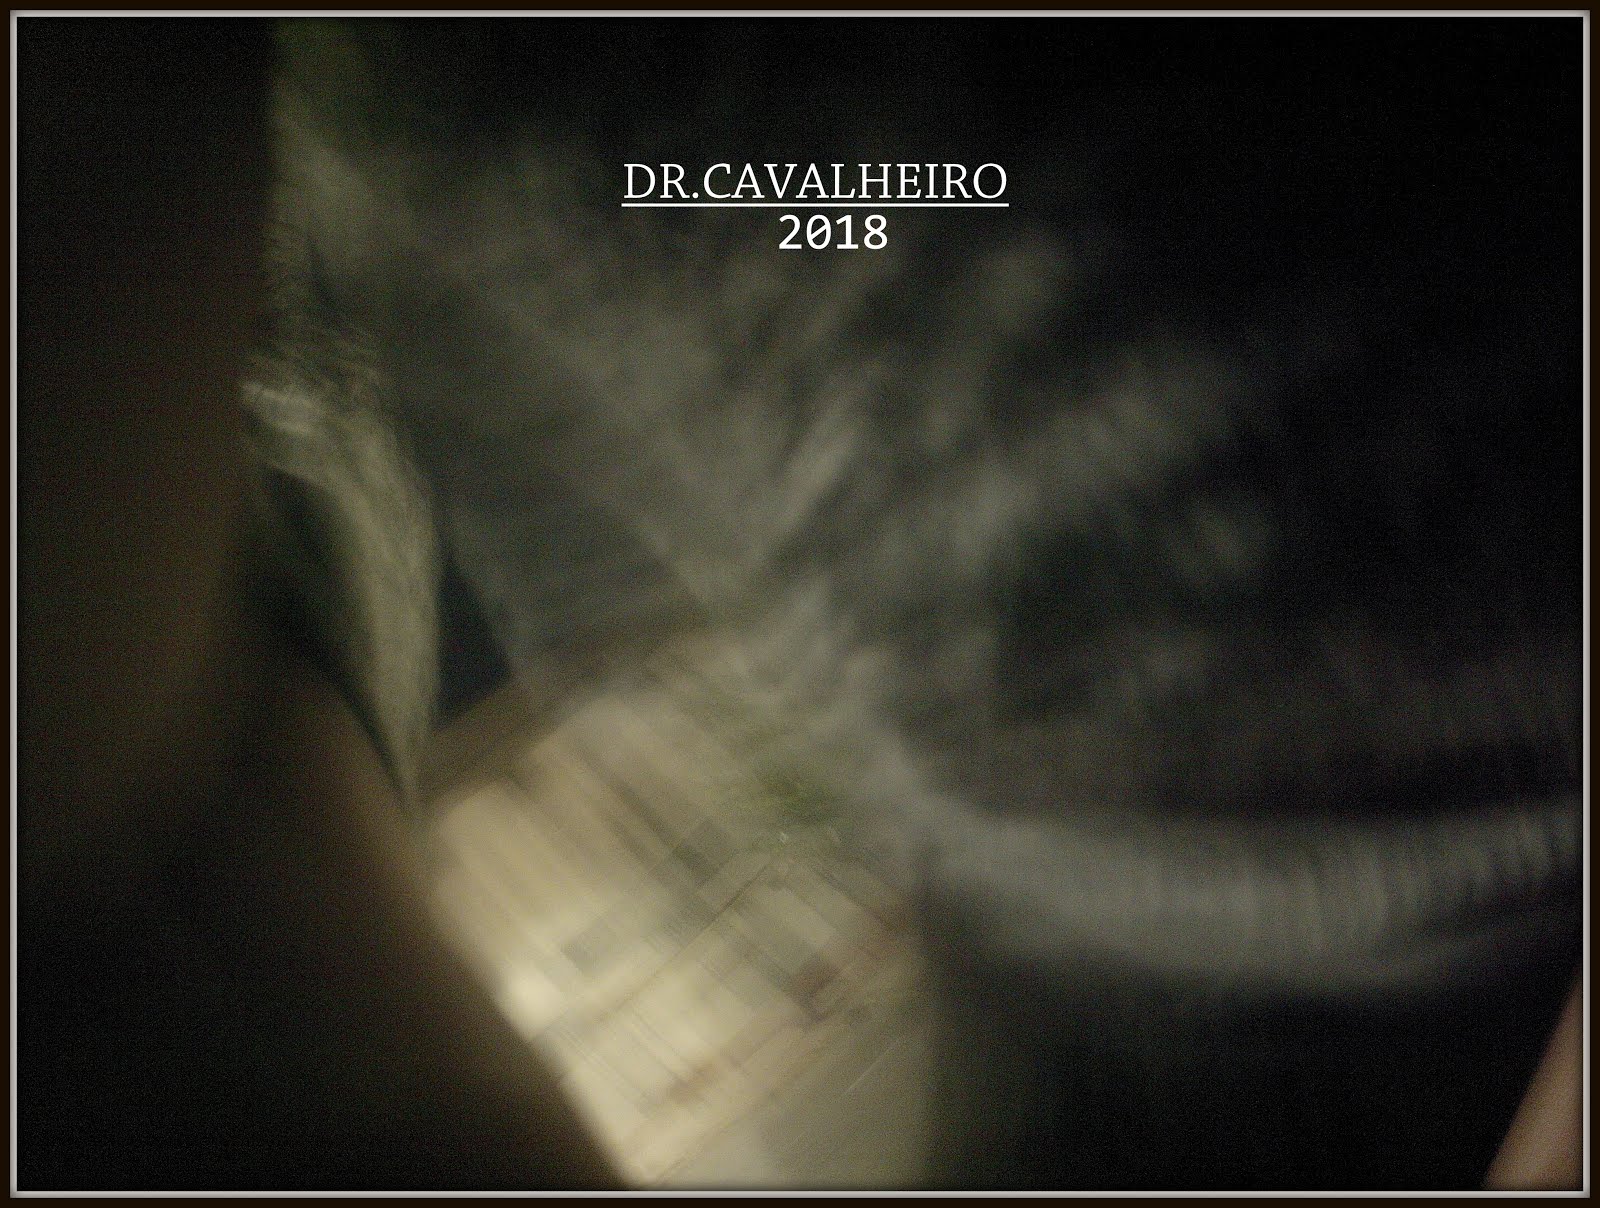 DR.CAVALHEIRO 2010 - 2017